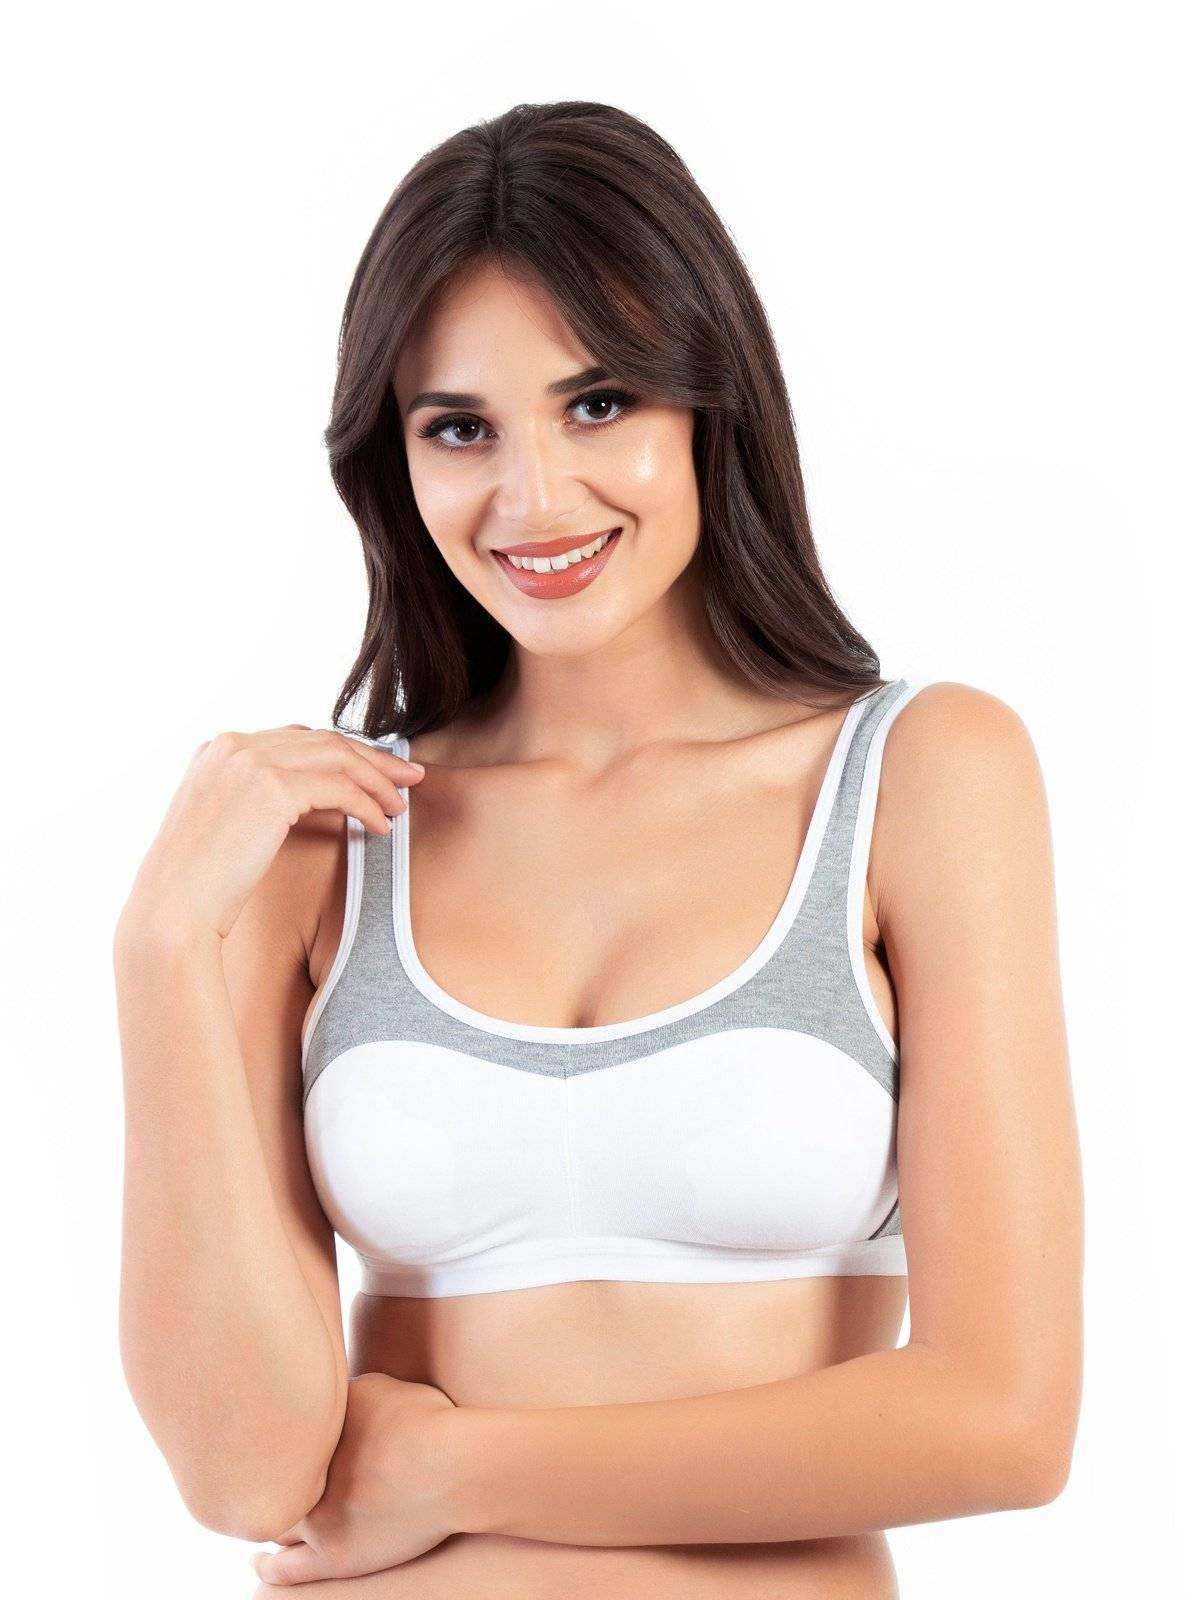 Hosiery Sinker sports bras, Size : 30, 32, 34, 36, 40, Style : Non Zipper  at Rs 17 / 100 dozen in delhi